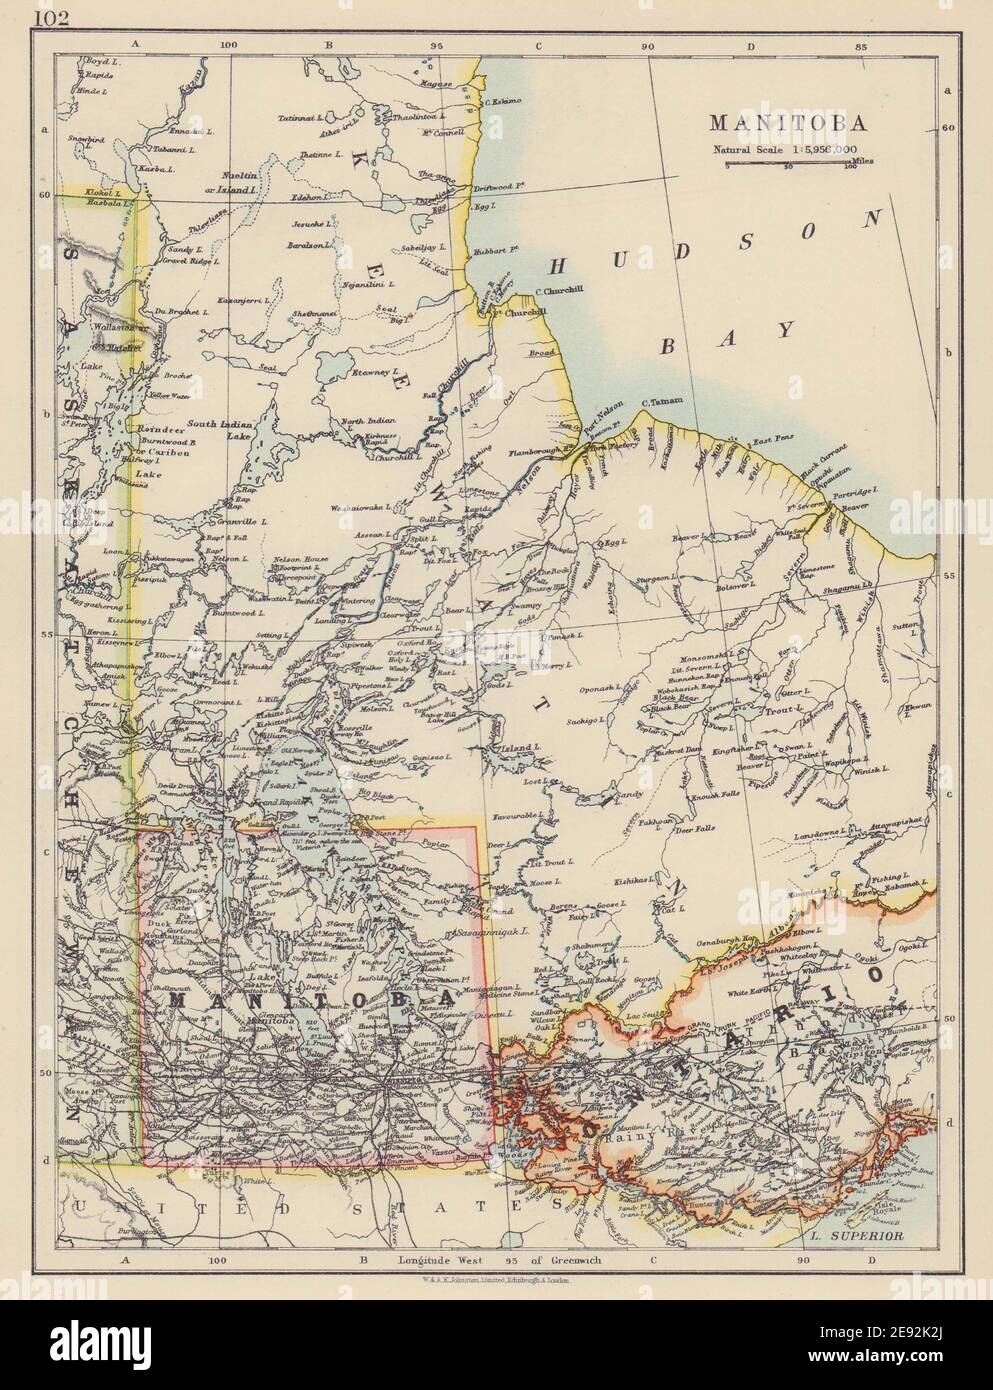 MANITOBA. Francobollo <1912 confine Winnipeg Canada Pacifico JOHNSTON 1910 mappa Foto Stock